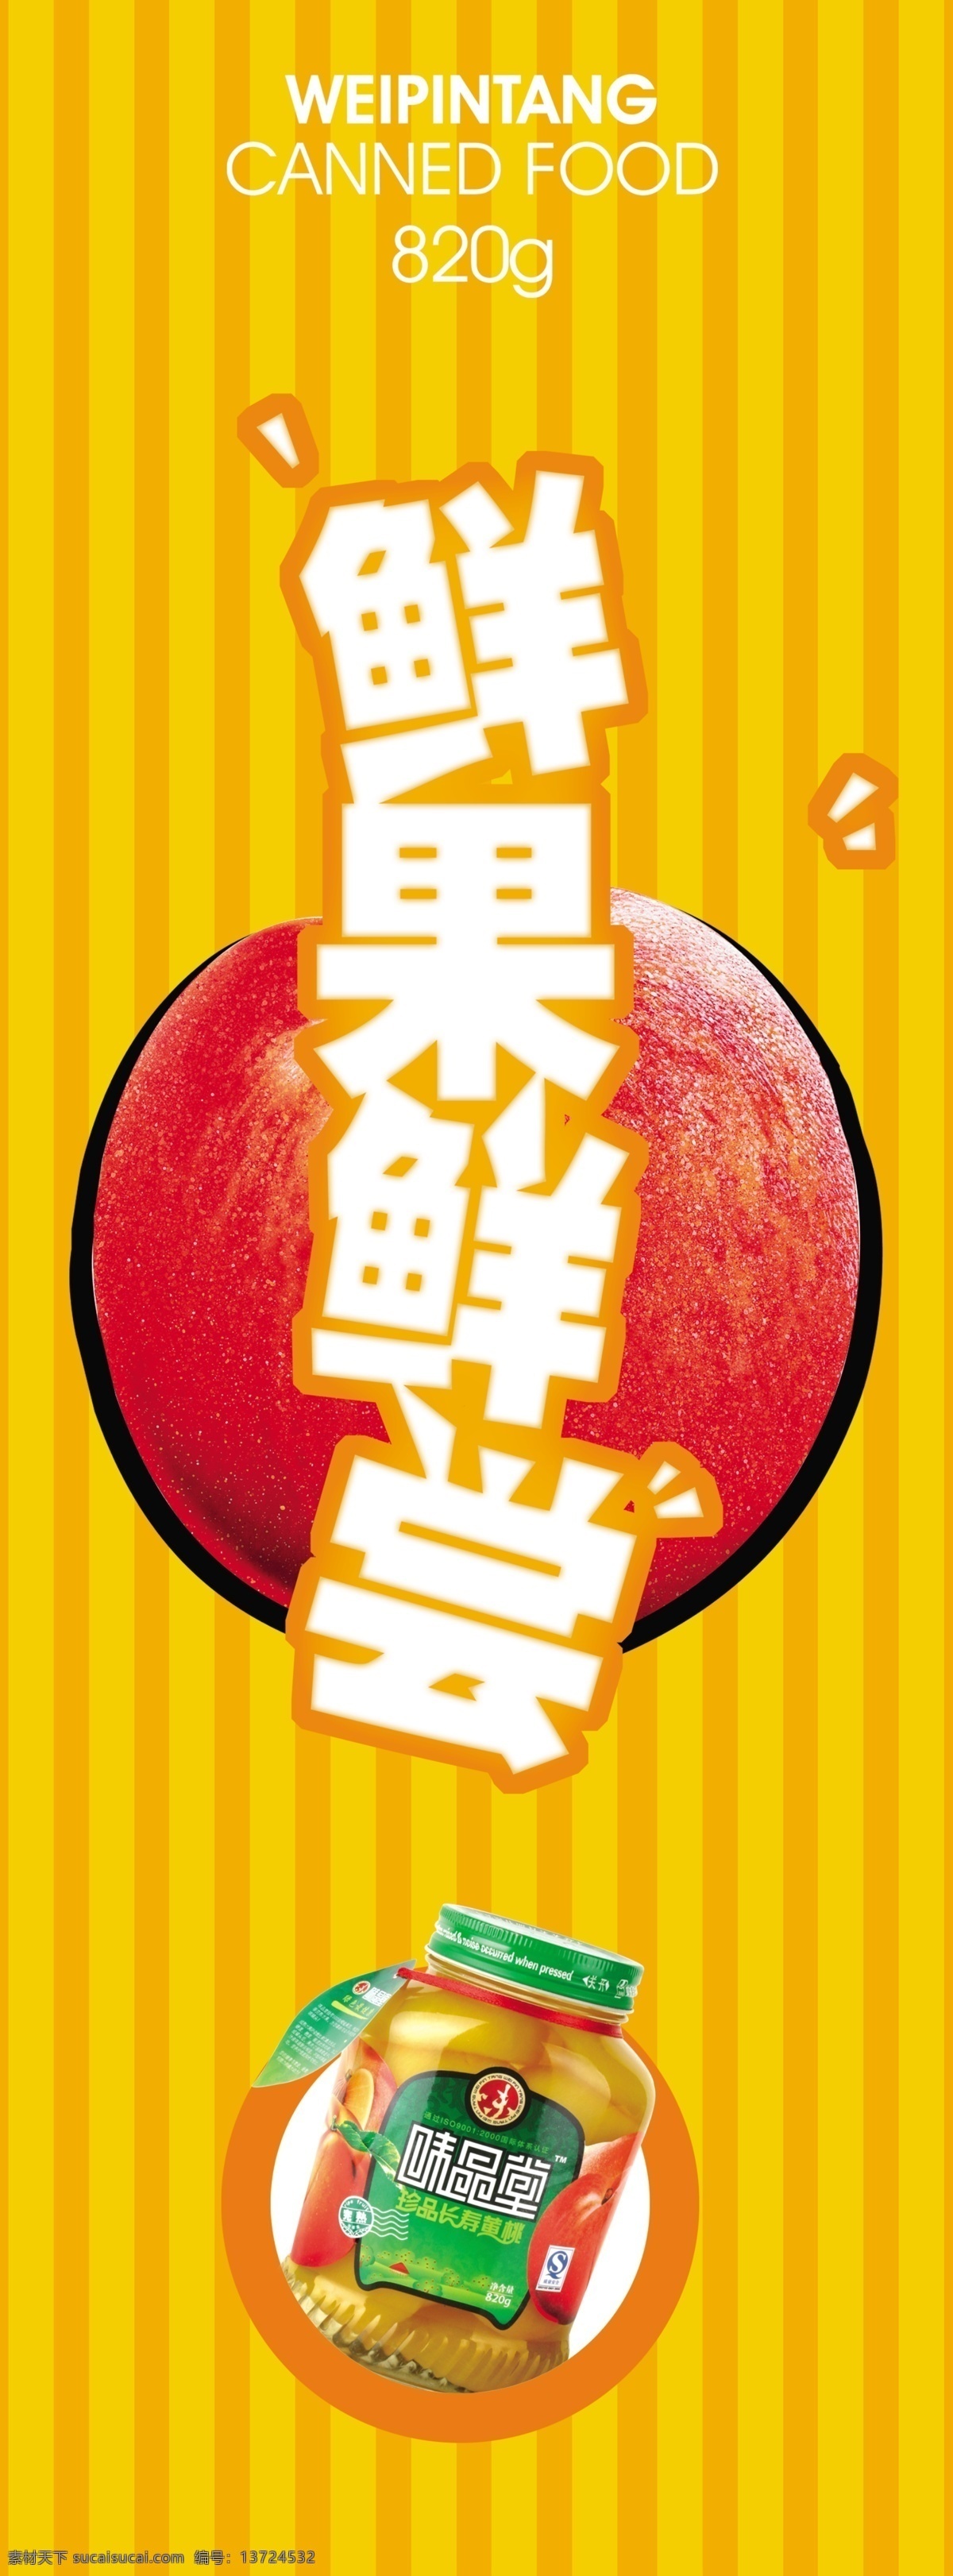 水果罐头新品 广告招贴 水果 pop 上市 招贴 psd素材 源文件库 美食海报设计 招贴设计 橙色